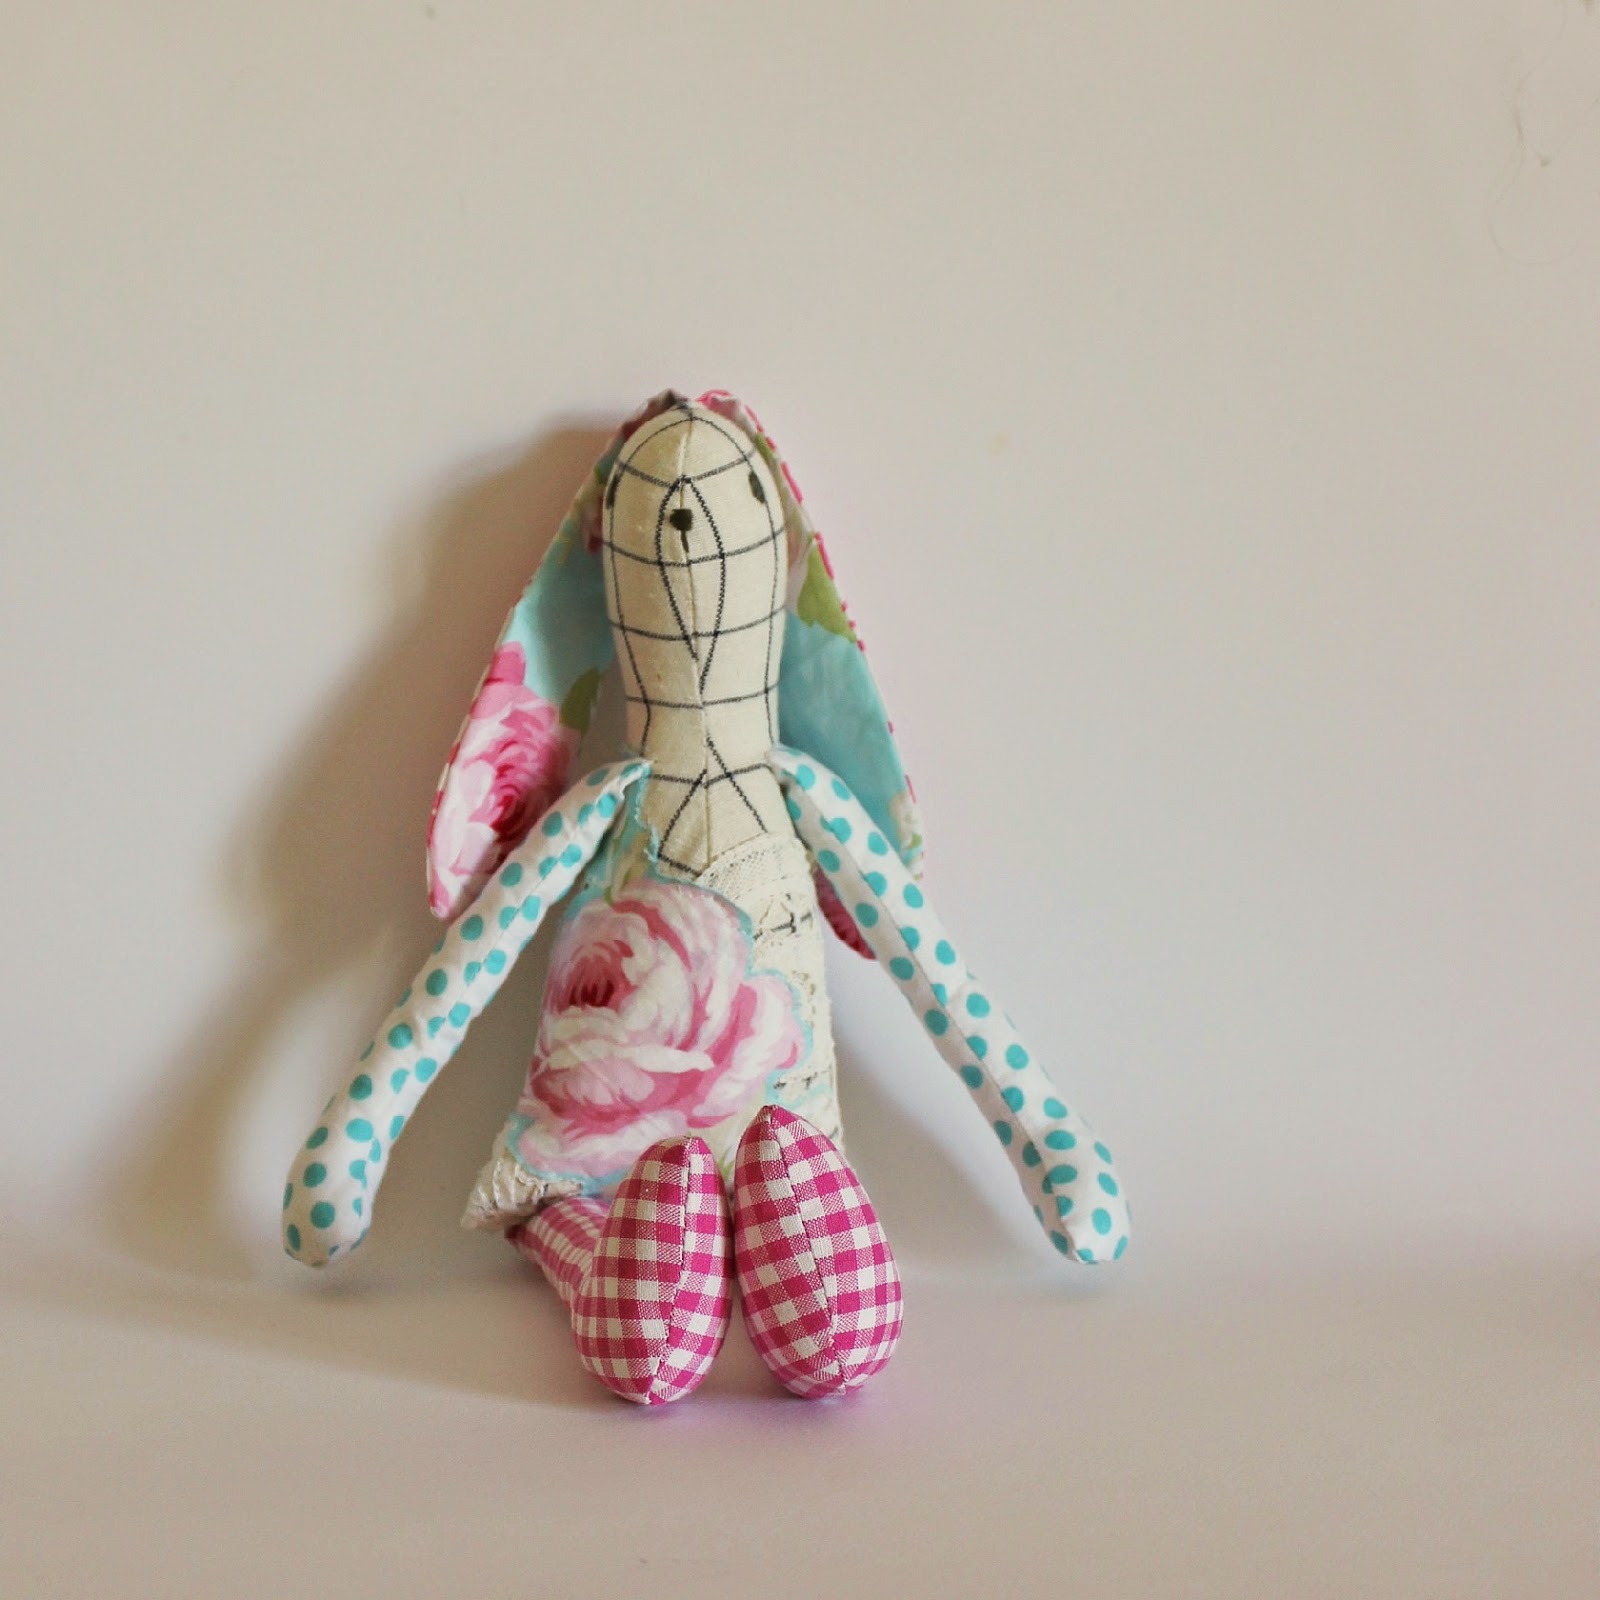 Roxy Creations: Heirloom bunnies!